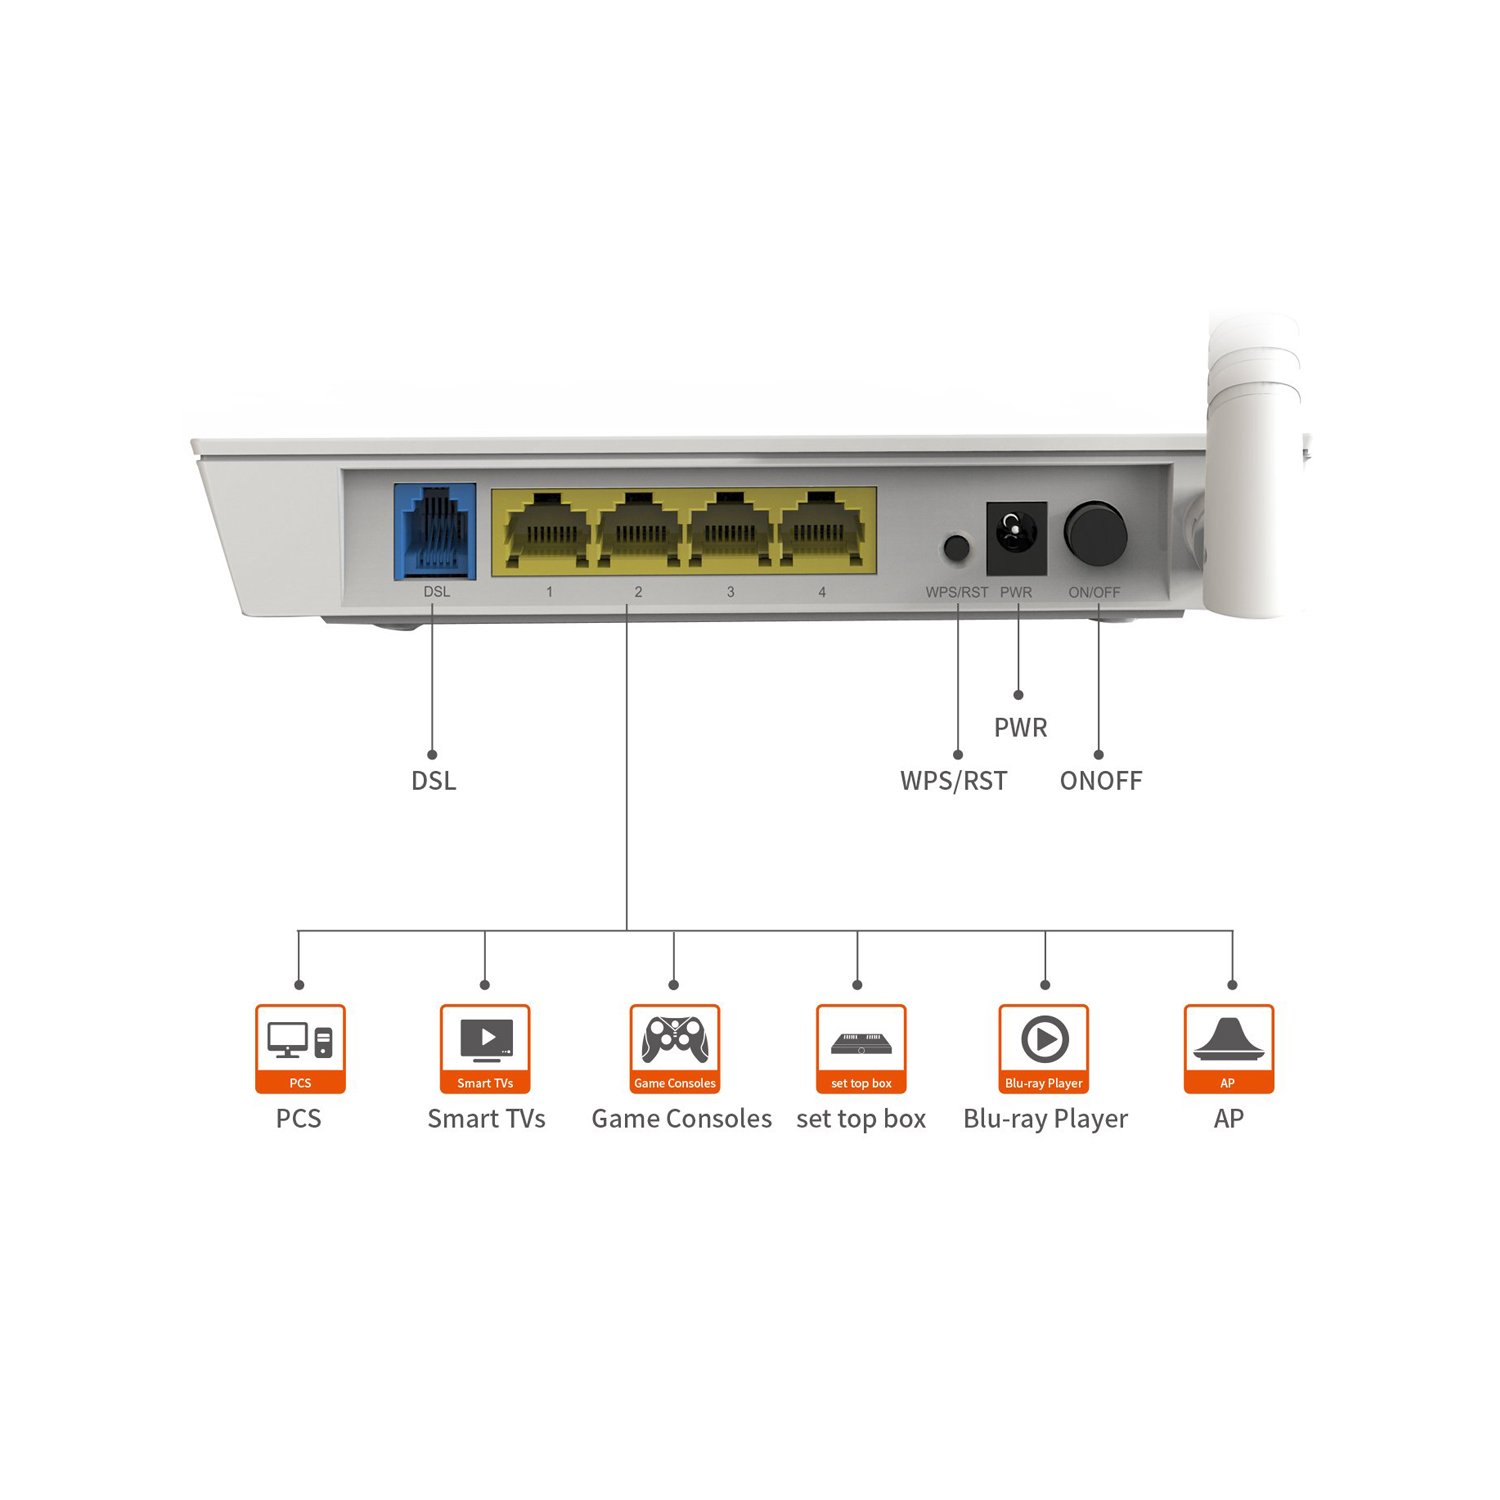 Router Tenda ADSL2+modem D151